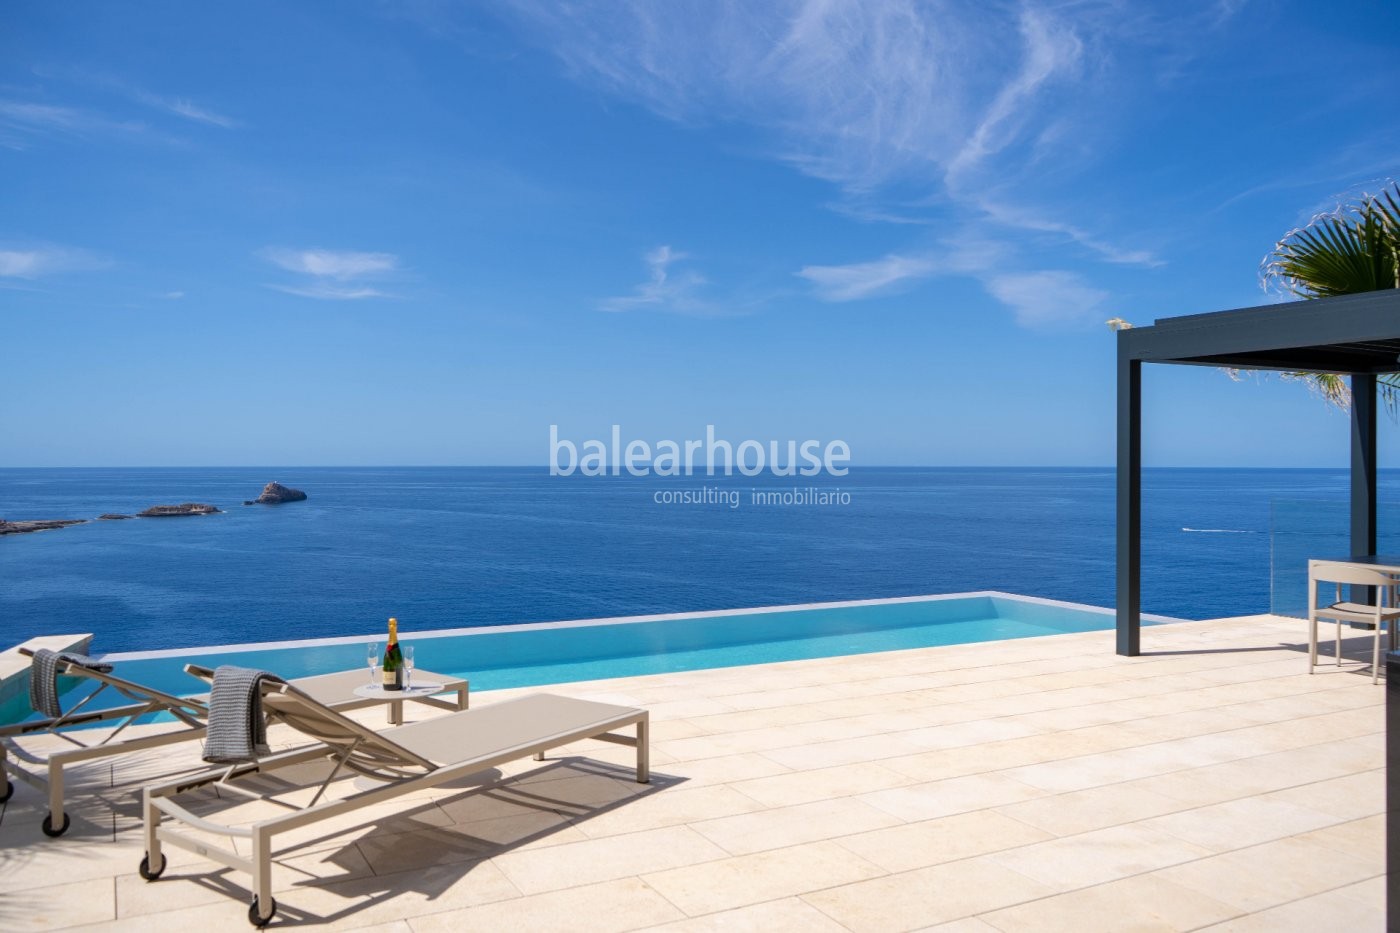 Impresionante villa en primera línea de mar que enmarca unas espectaculares vistas al Mediterráneo.